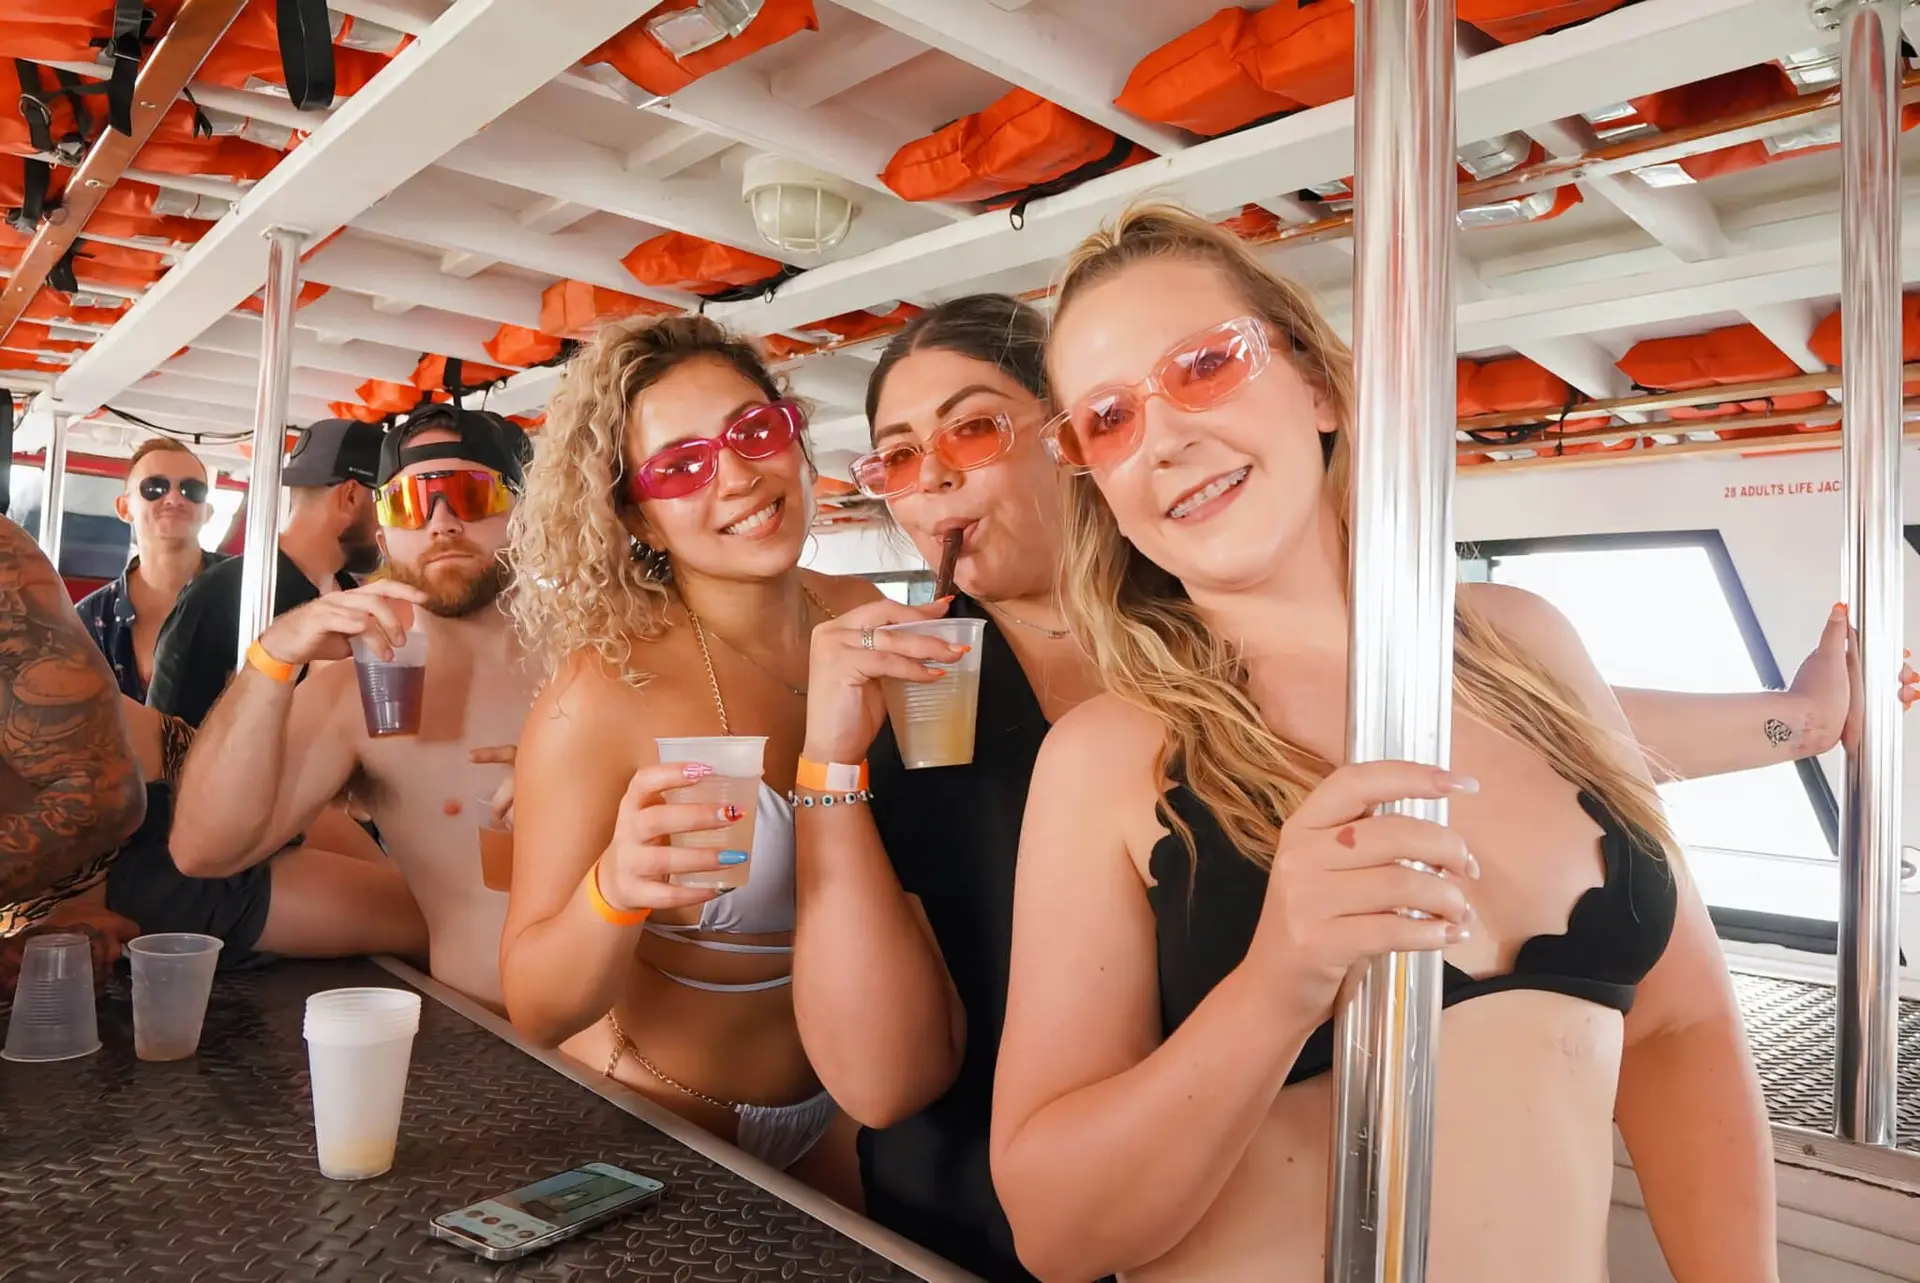 Miami Boat Party